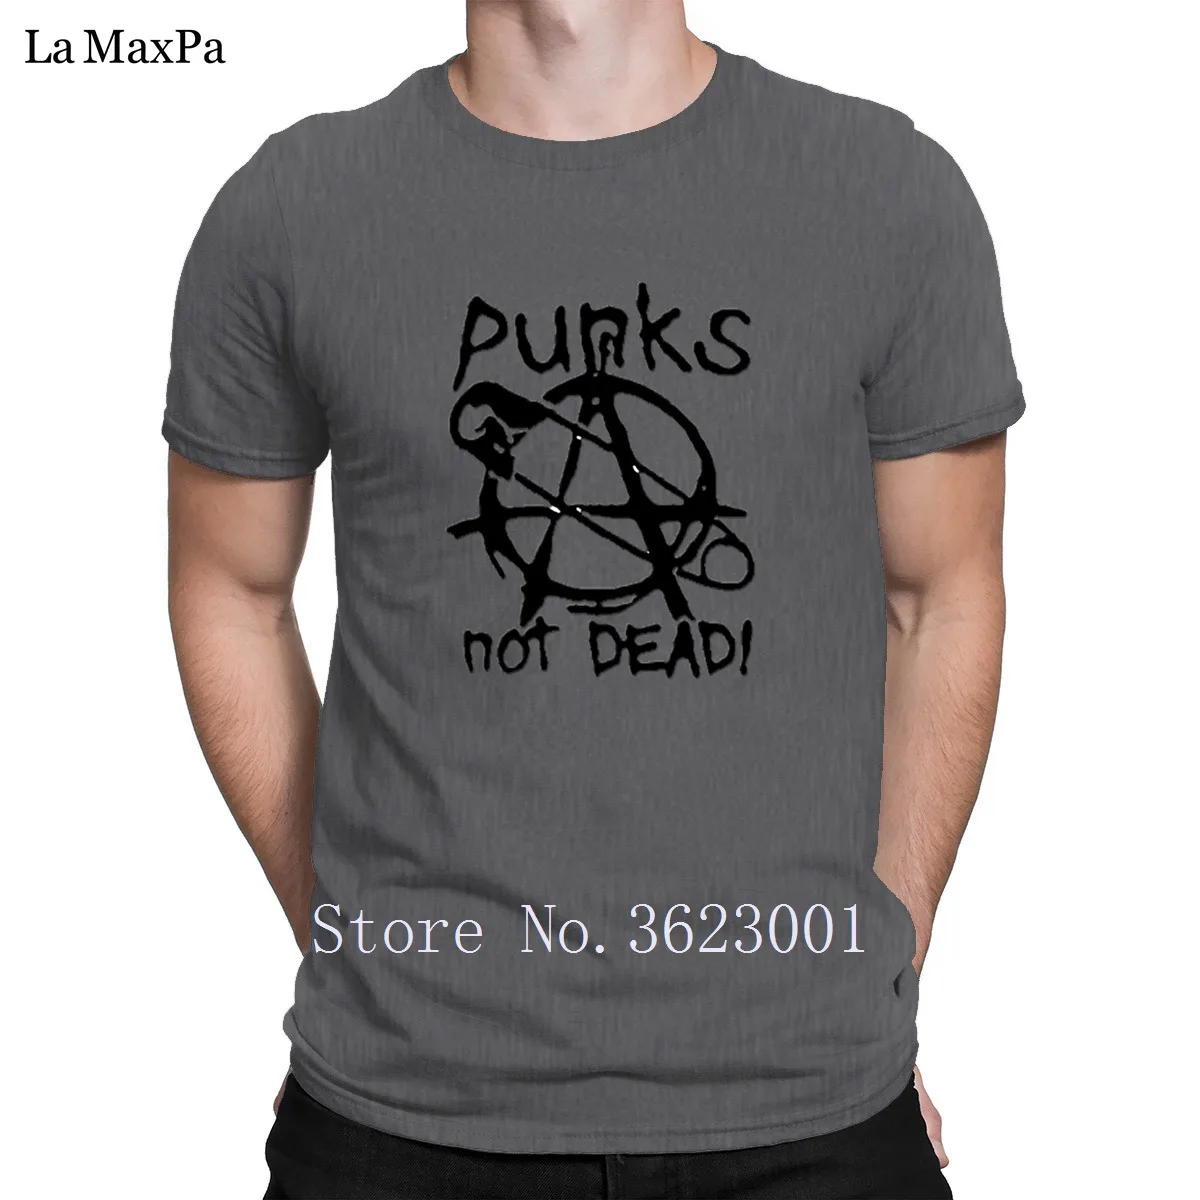 Новое поступление, креативная Мужская футболка с надписью Punks Not Dead, Мужская футболка унисекс, Мужская футболка с надписью, хлопок, высокое качество - Цвет: Dark Gray